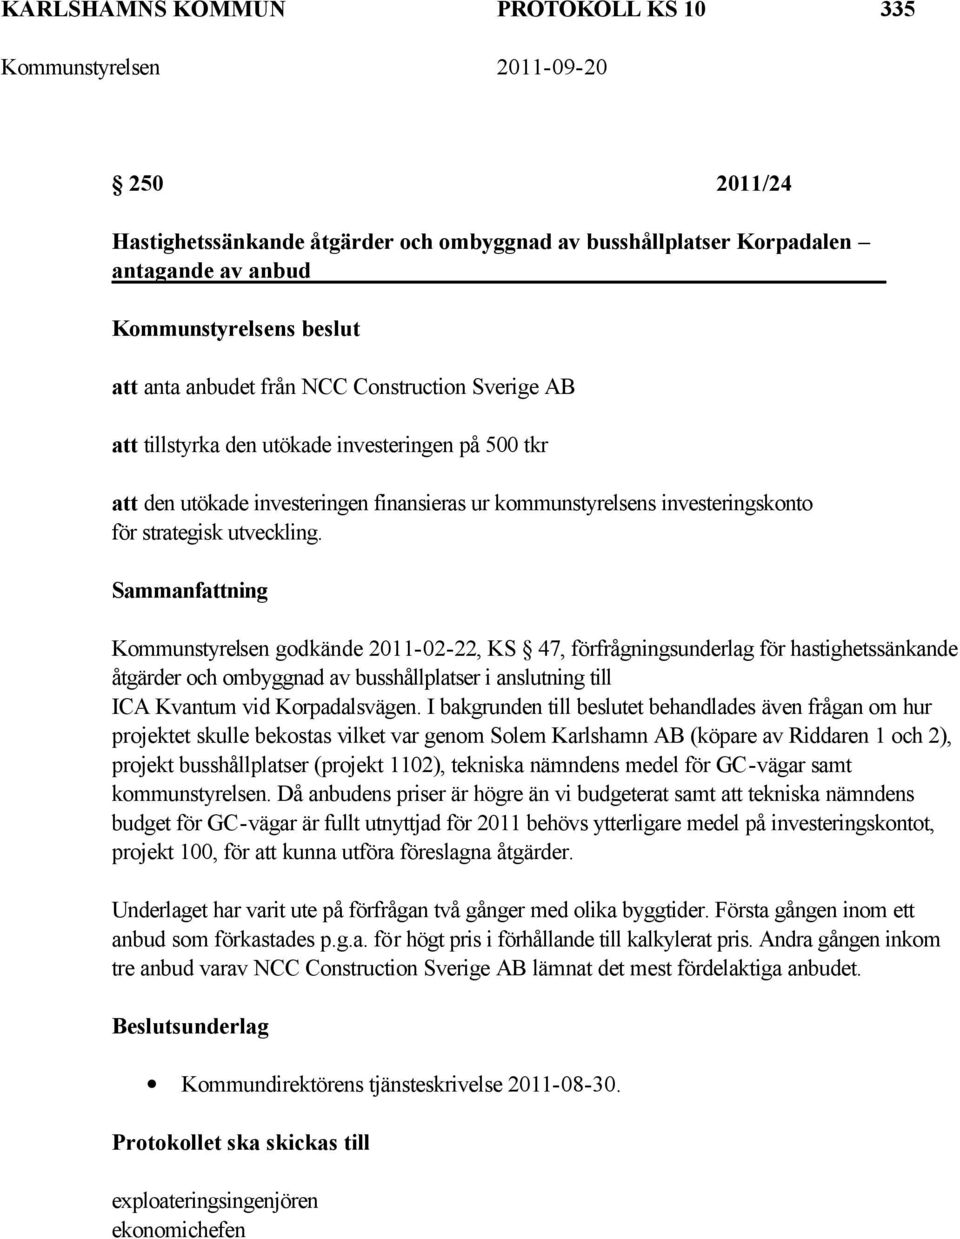 Kommunstyrelsen godkände 2011-02-22, KS 47, förfrågningsunderlag för hastighetssänkande åtgärder och ombyggnad av busshållplatser i anslutning till ICA Kvantum vid Korpadalsvägen.